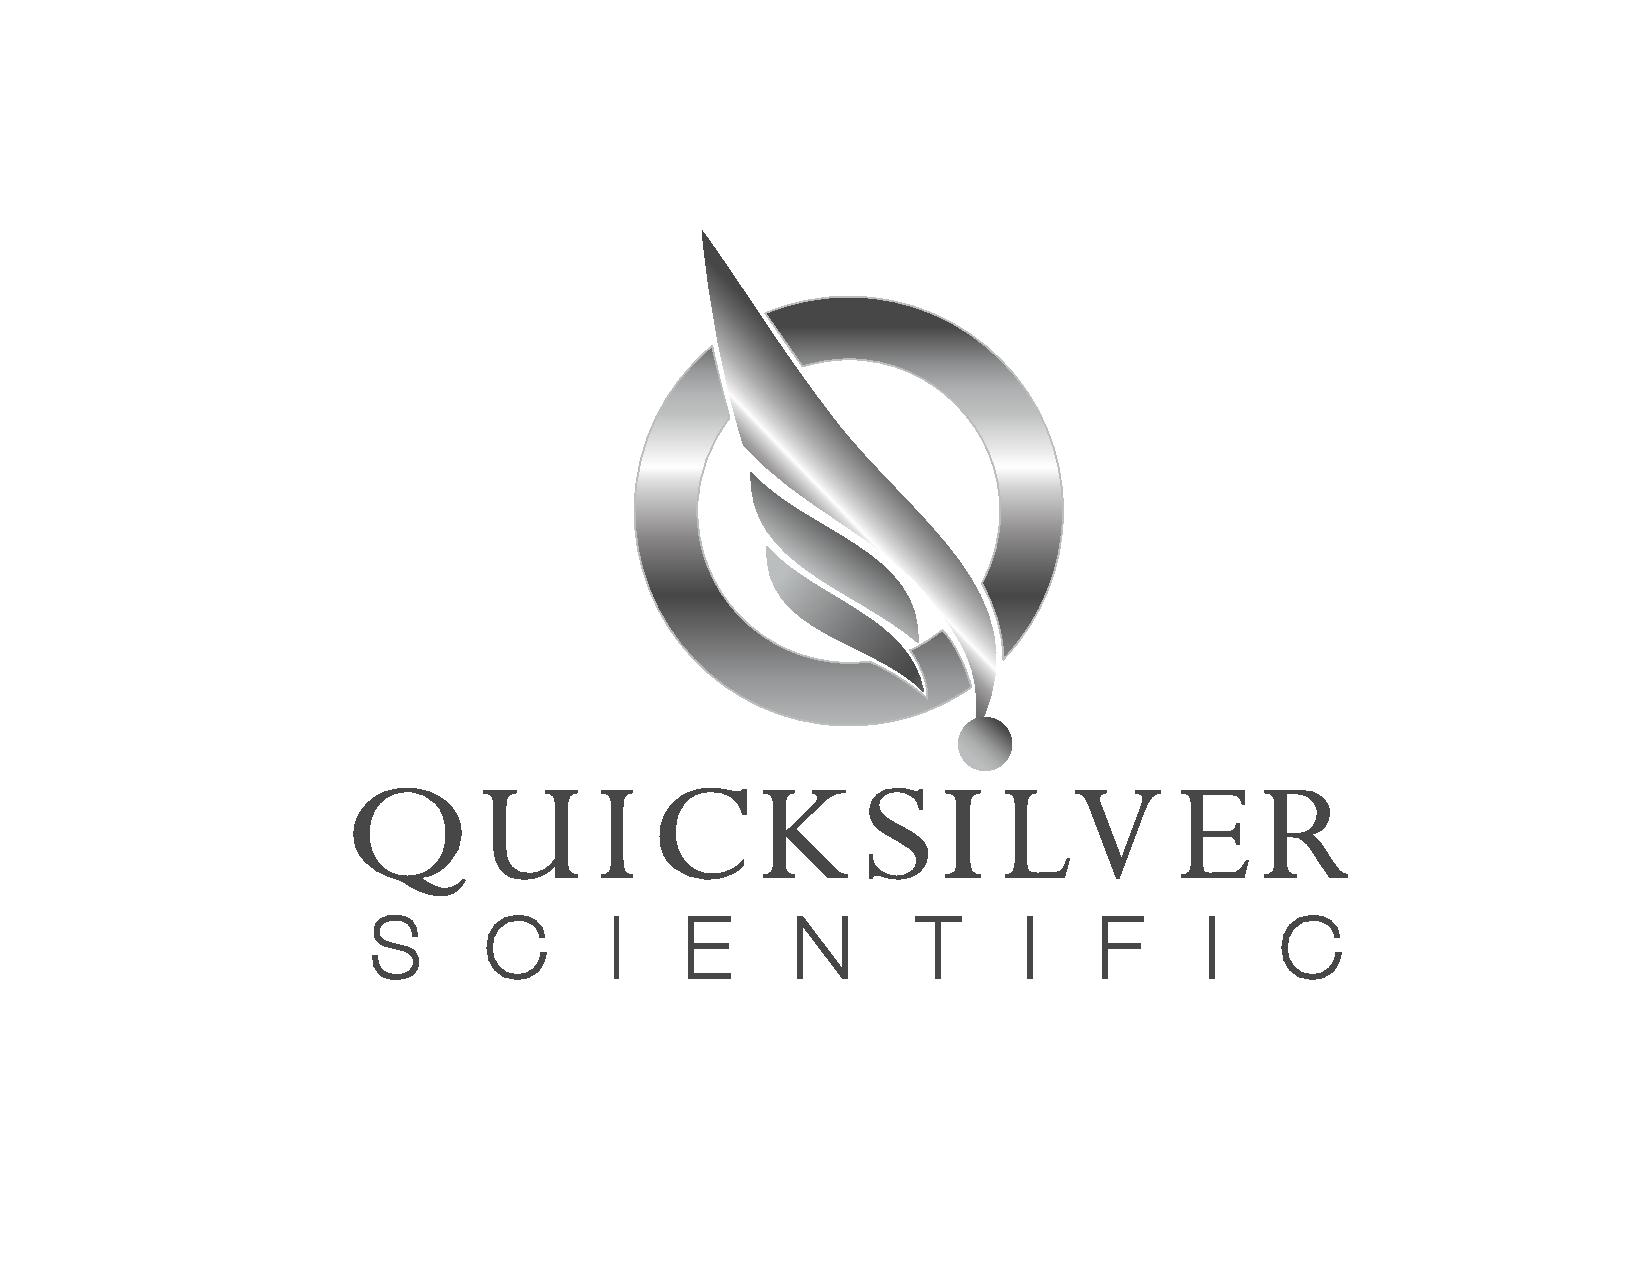 Quicksilver Scientific - Workshop Stage Sponsor